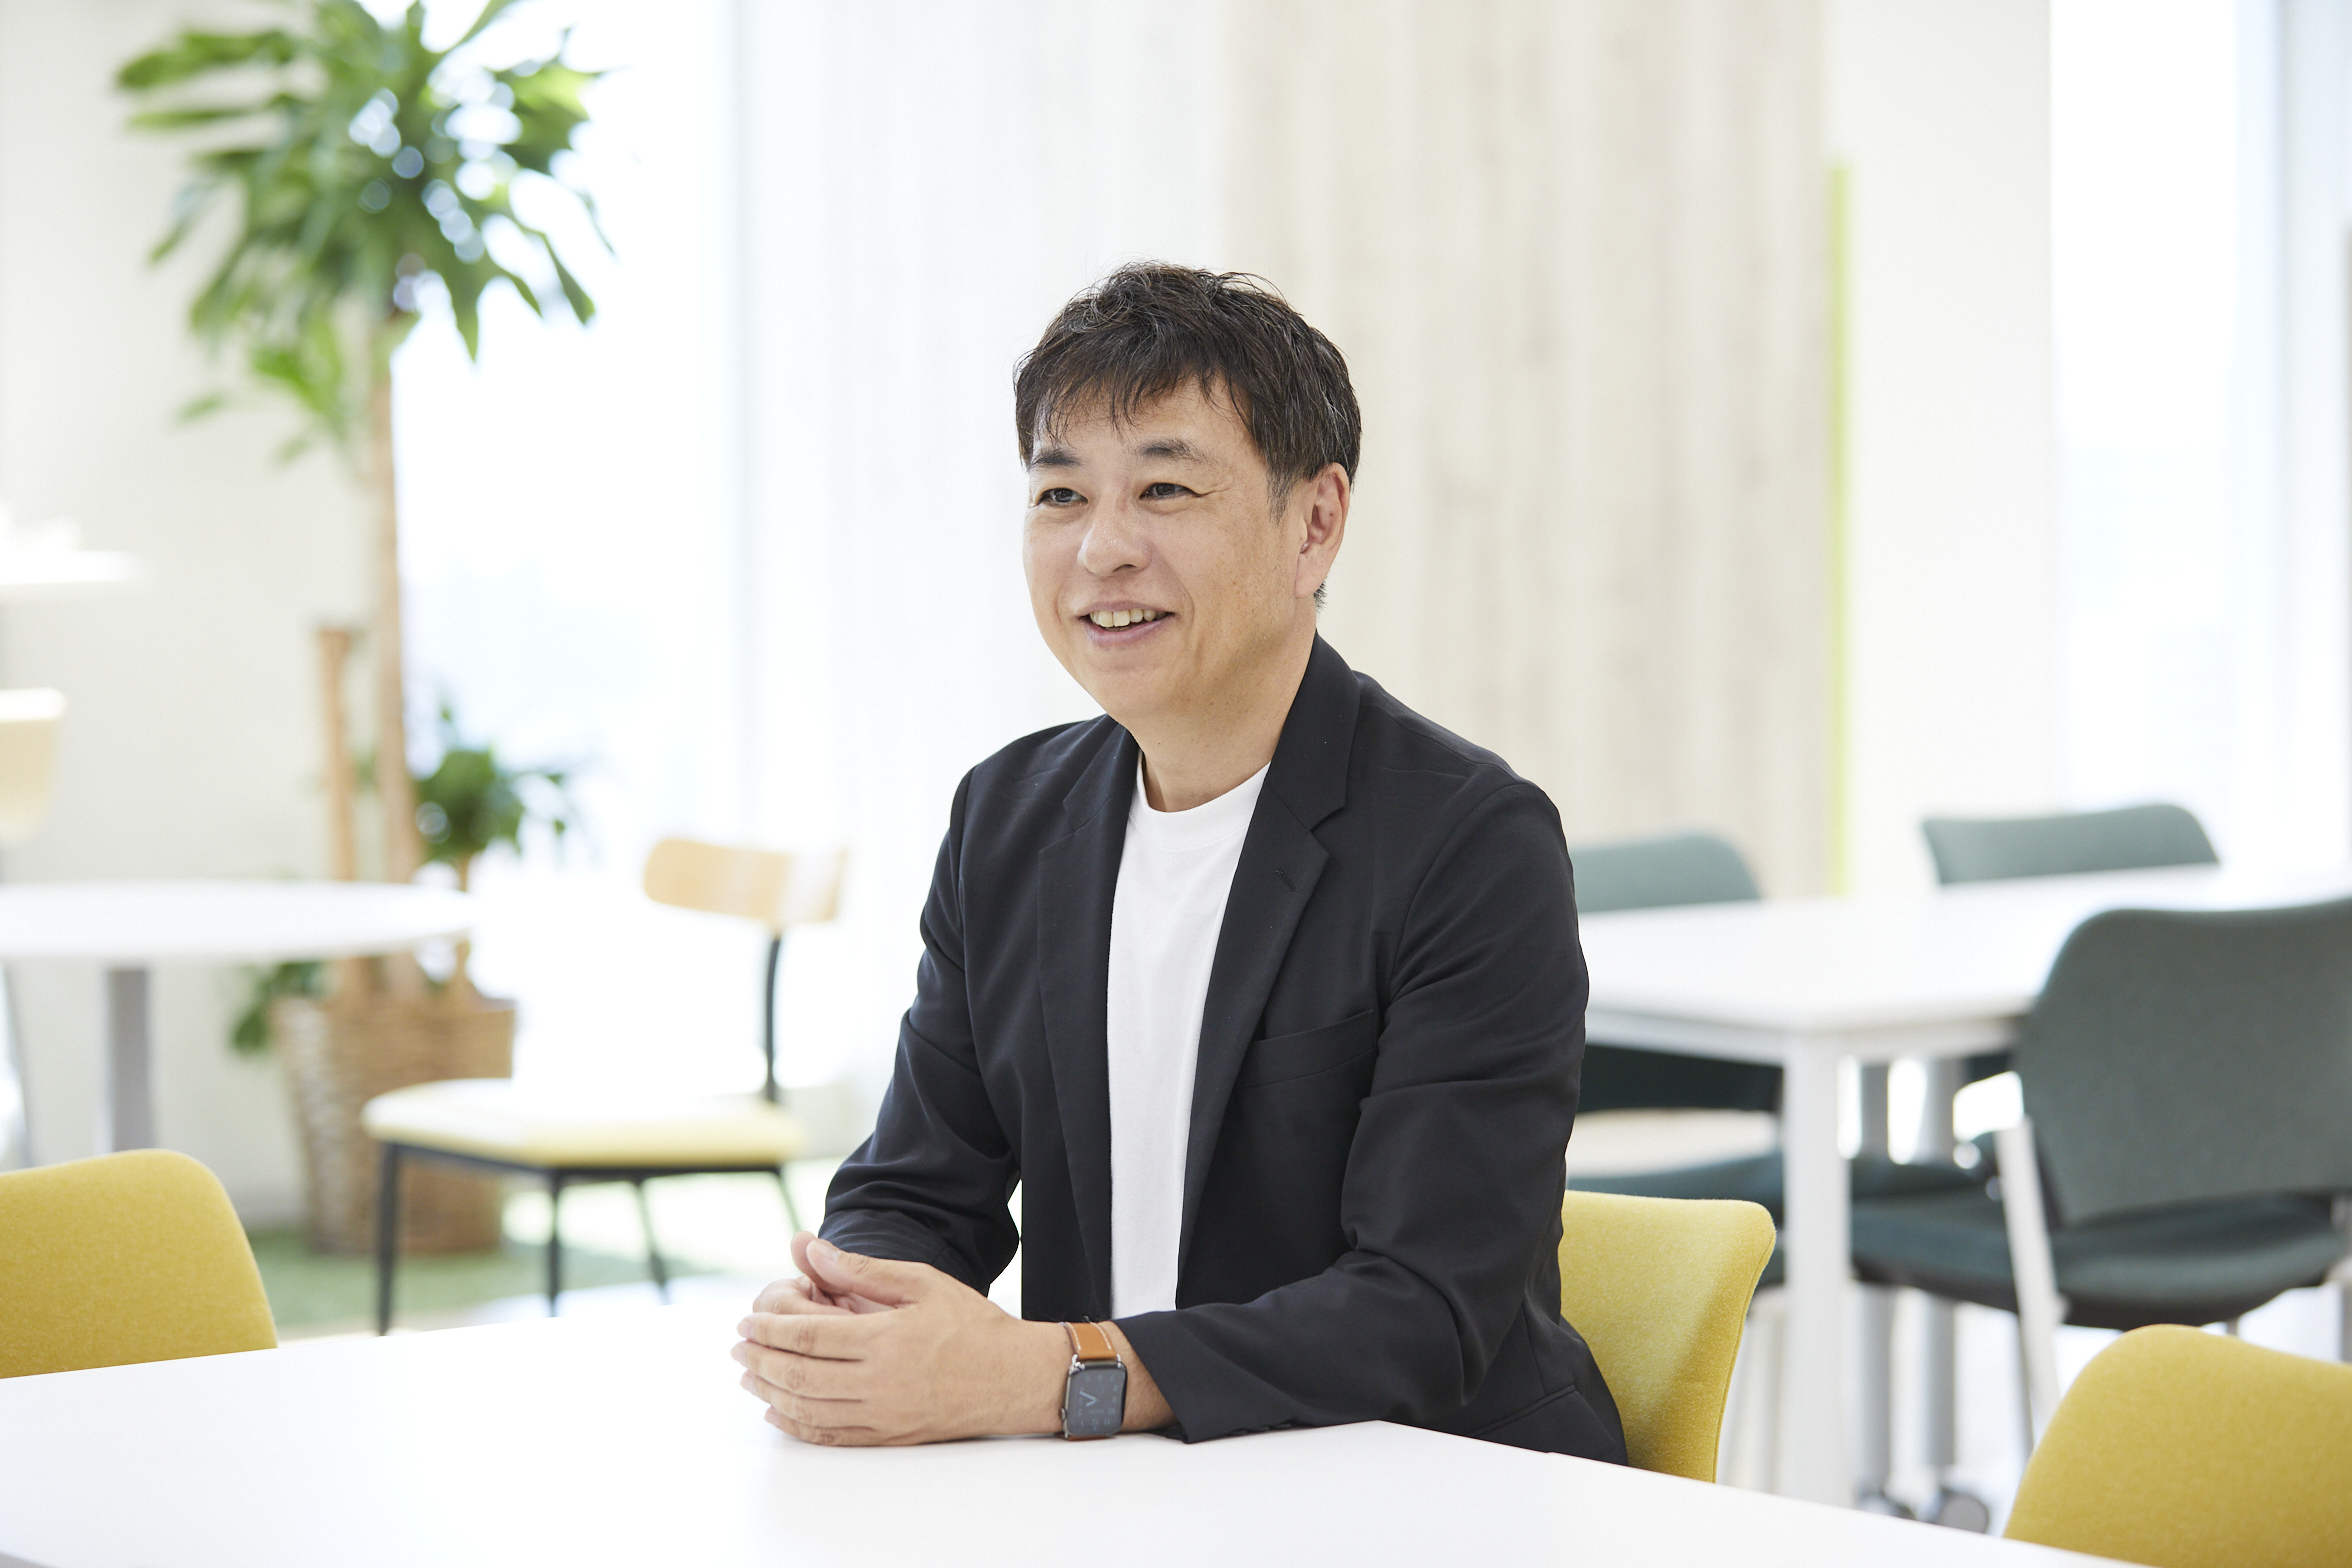 代表取締役　和田 哲也氏
2014年に同社を設立後、半年で『Re:lation』を開発し、リリースまでこぎつける。